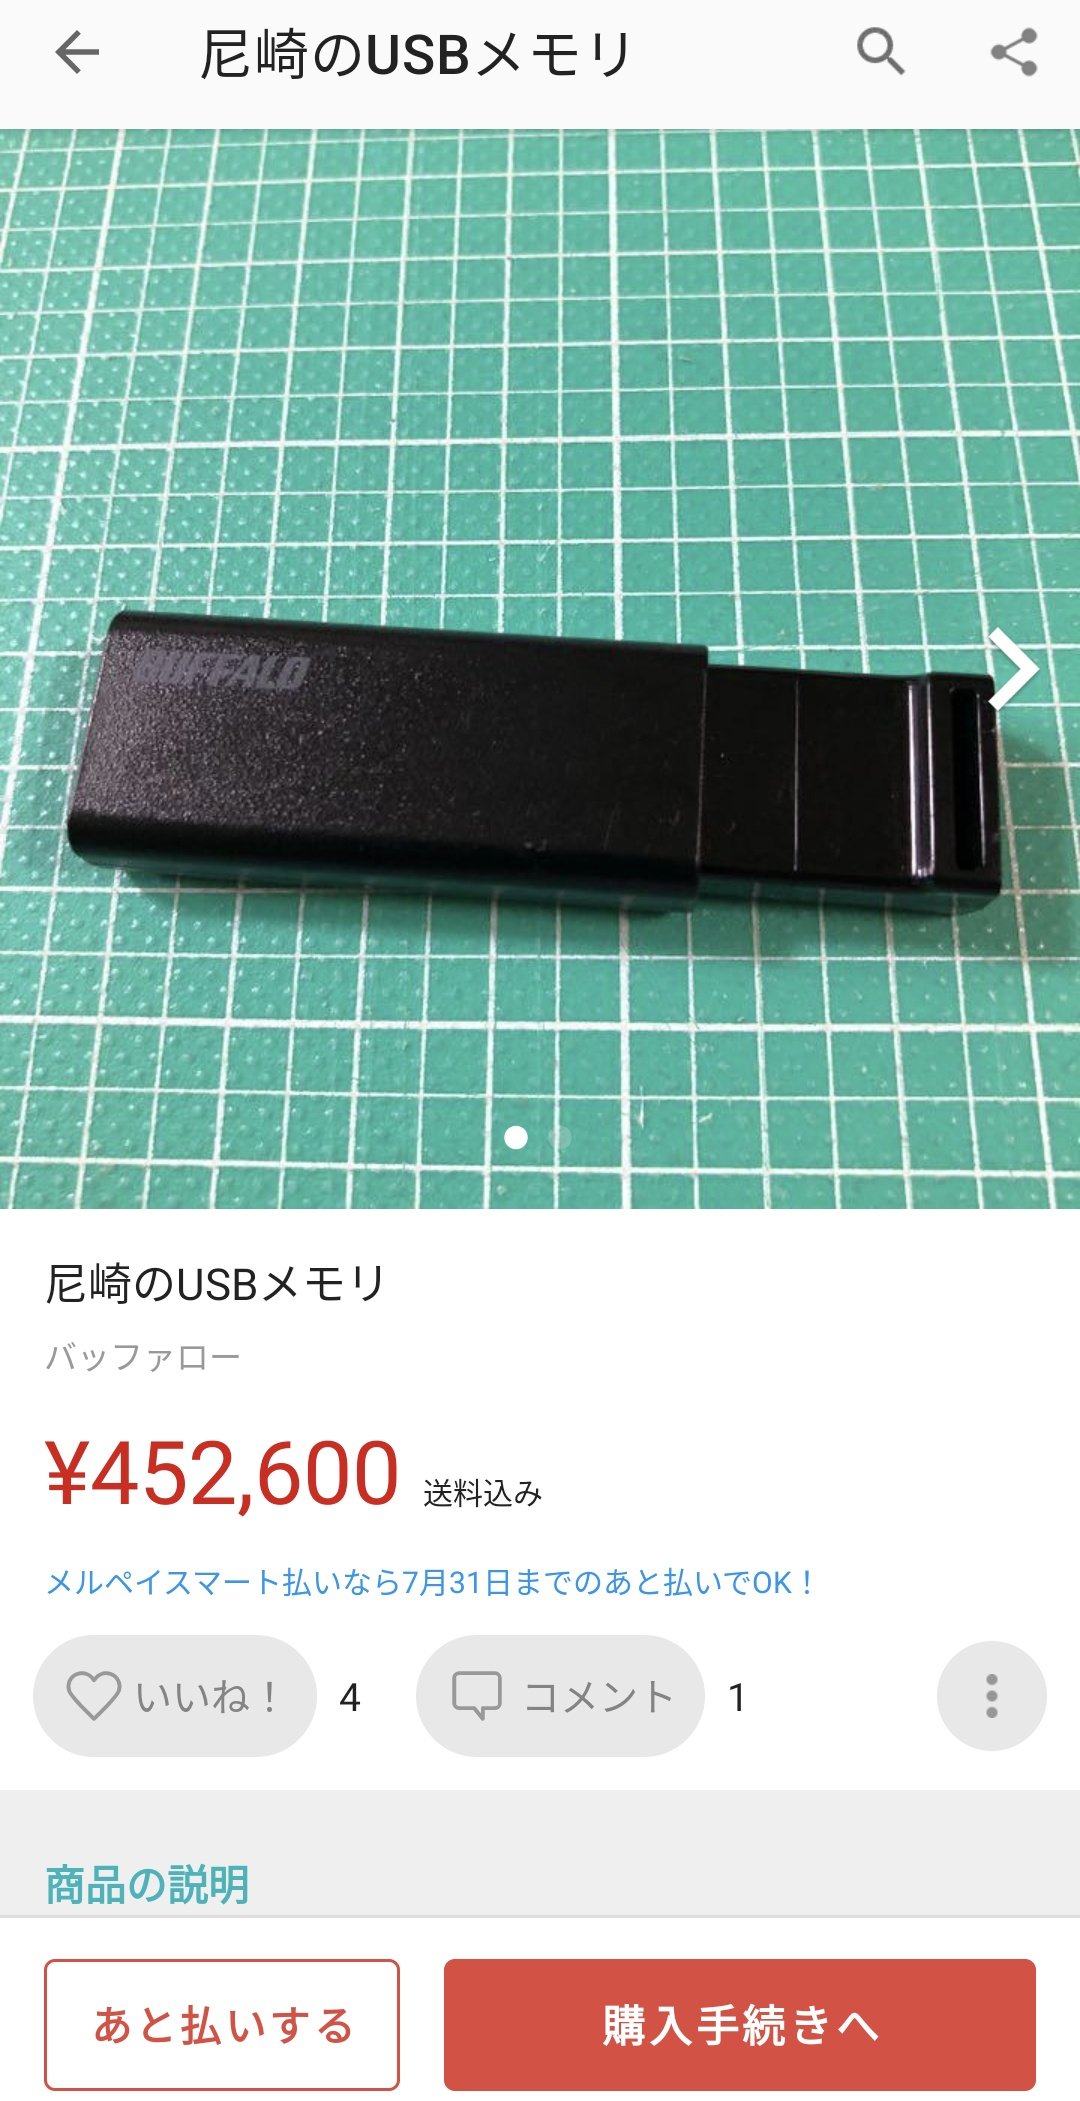 尼崎市USBがメルカリに出品されたというデマ情報